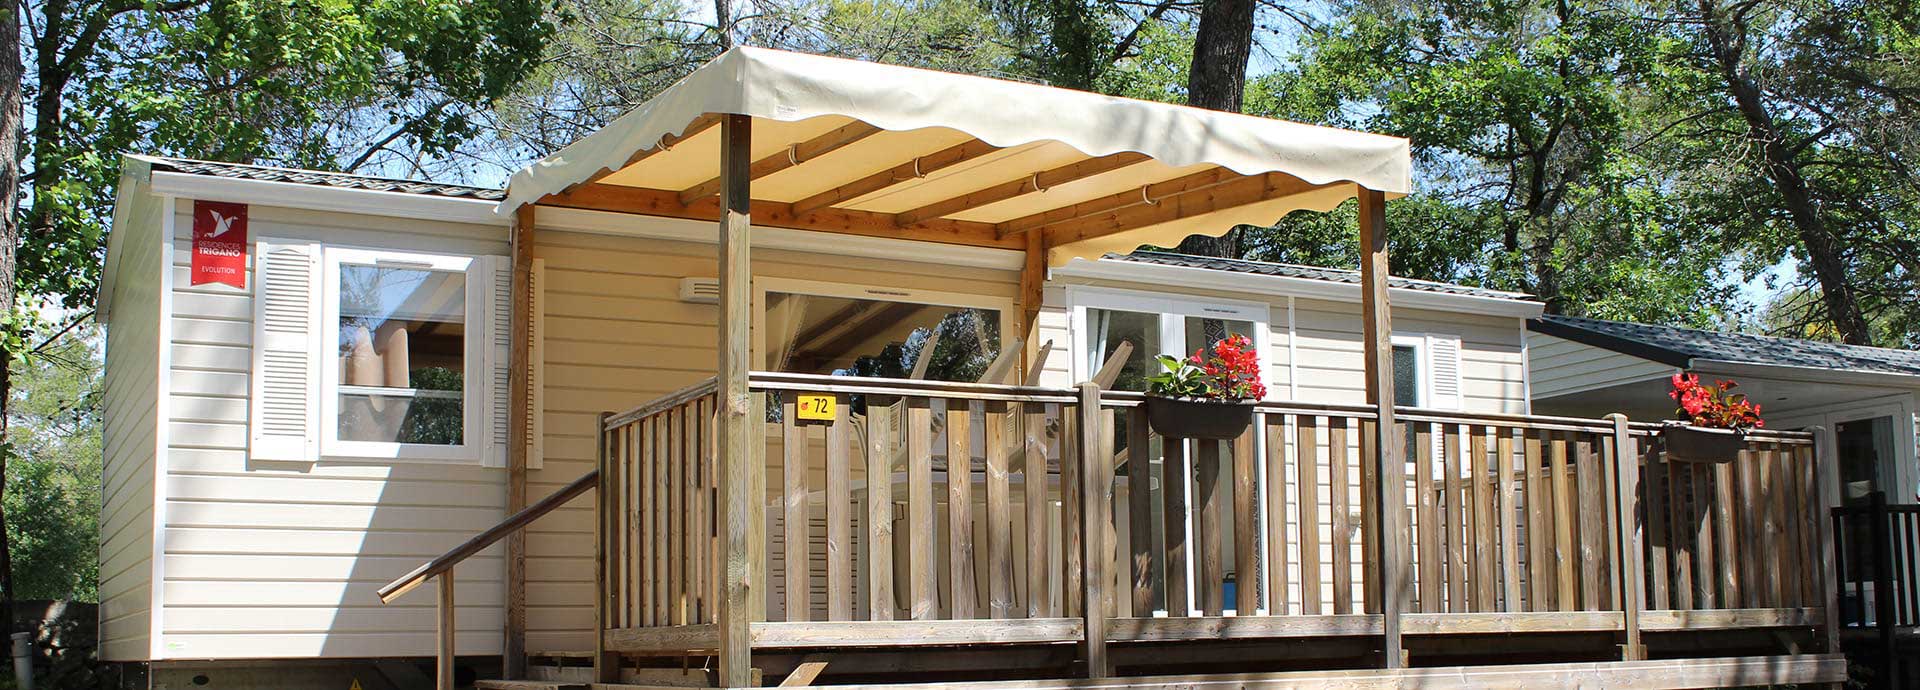 La terrasse extérieure de la location mobil-home Confort 6 personnes dans l'arrière-pays de Fréjus, au camping le Parc.